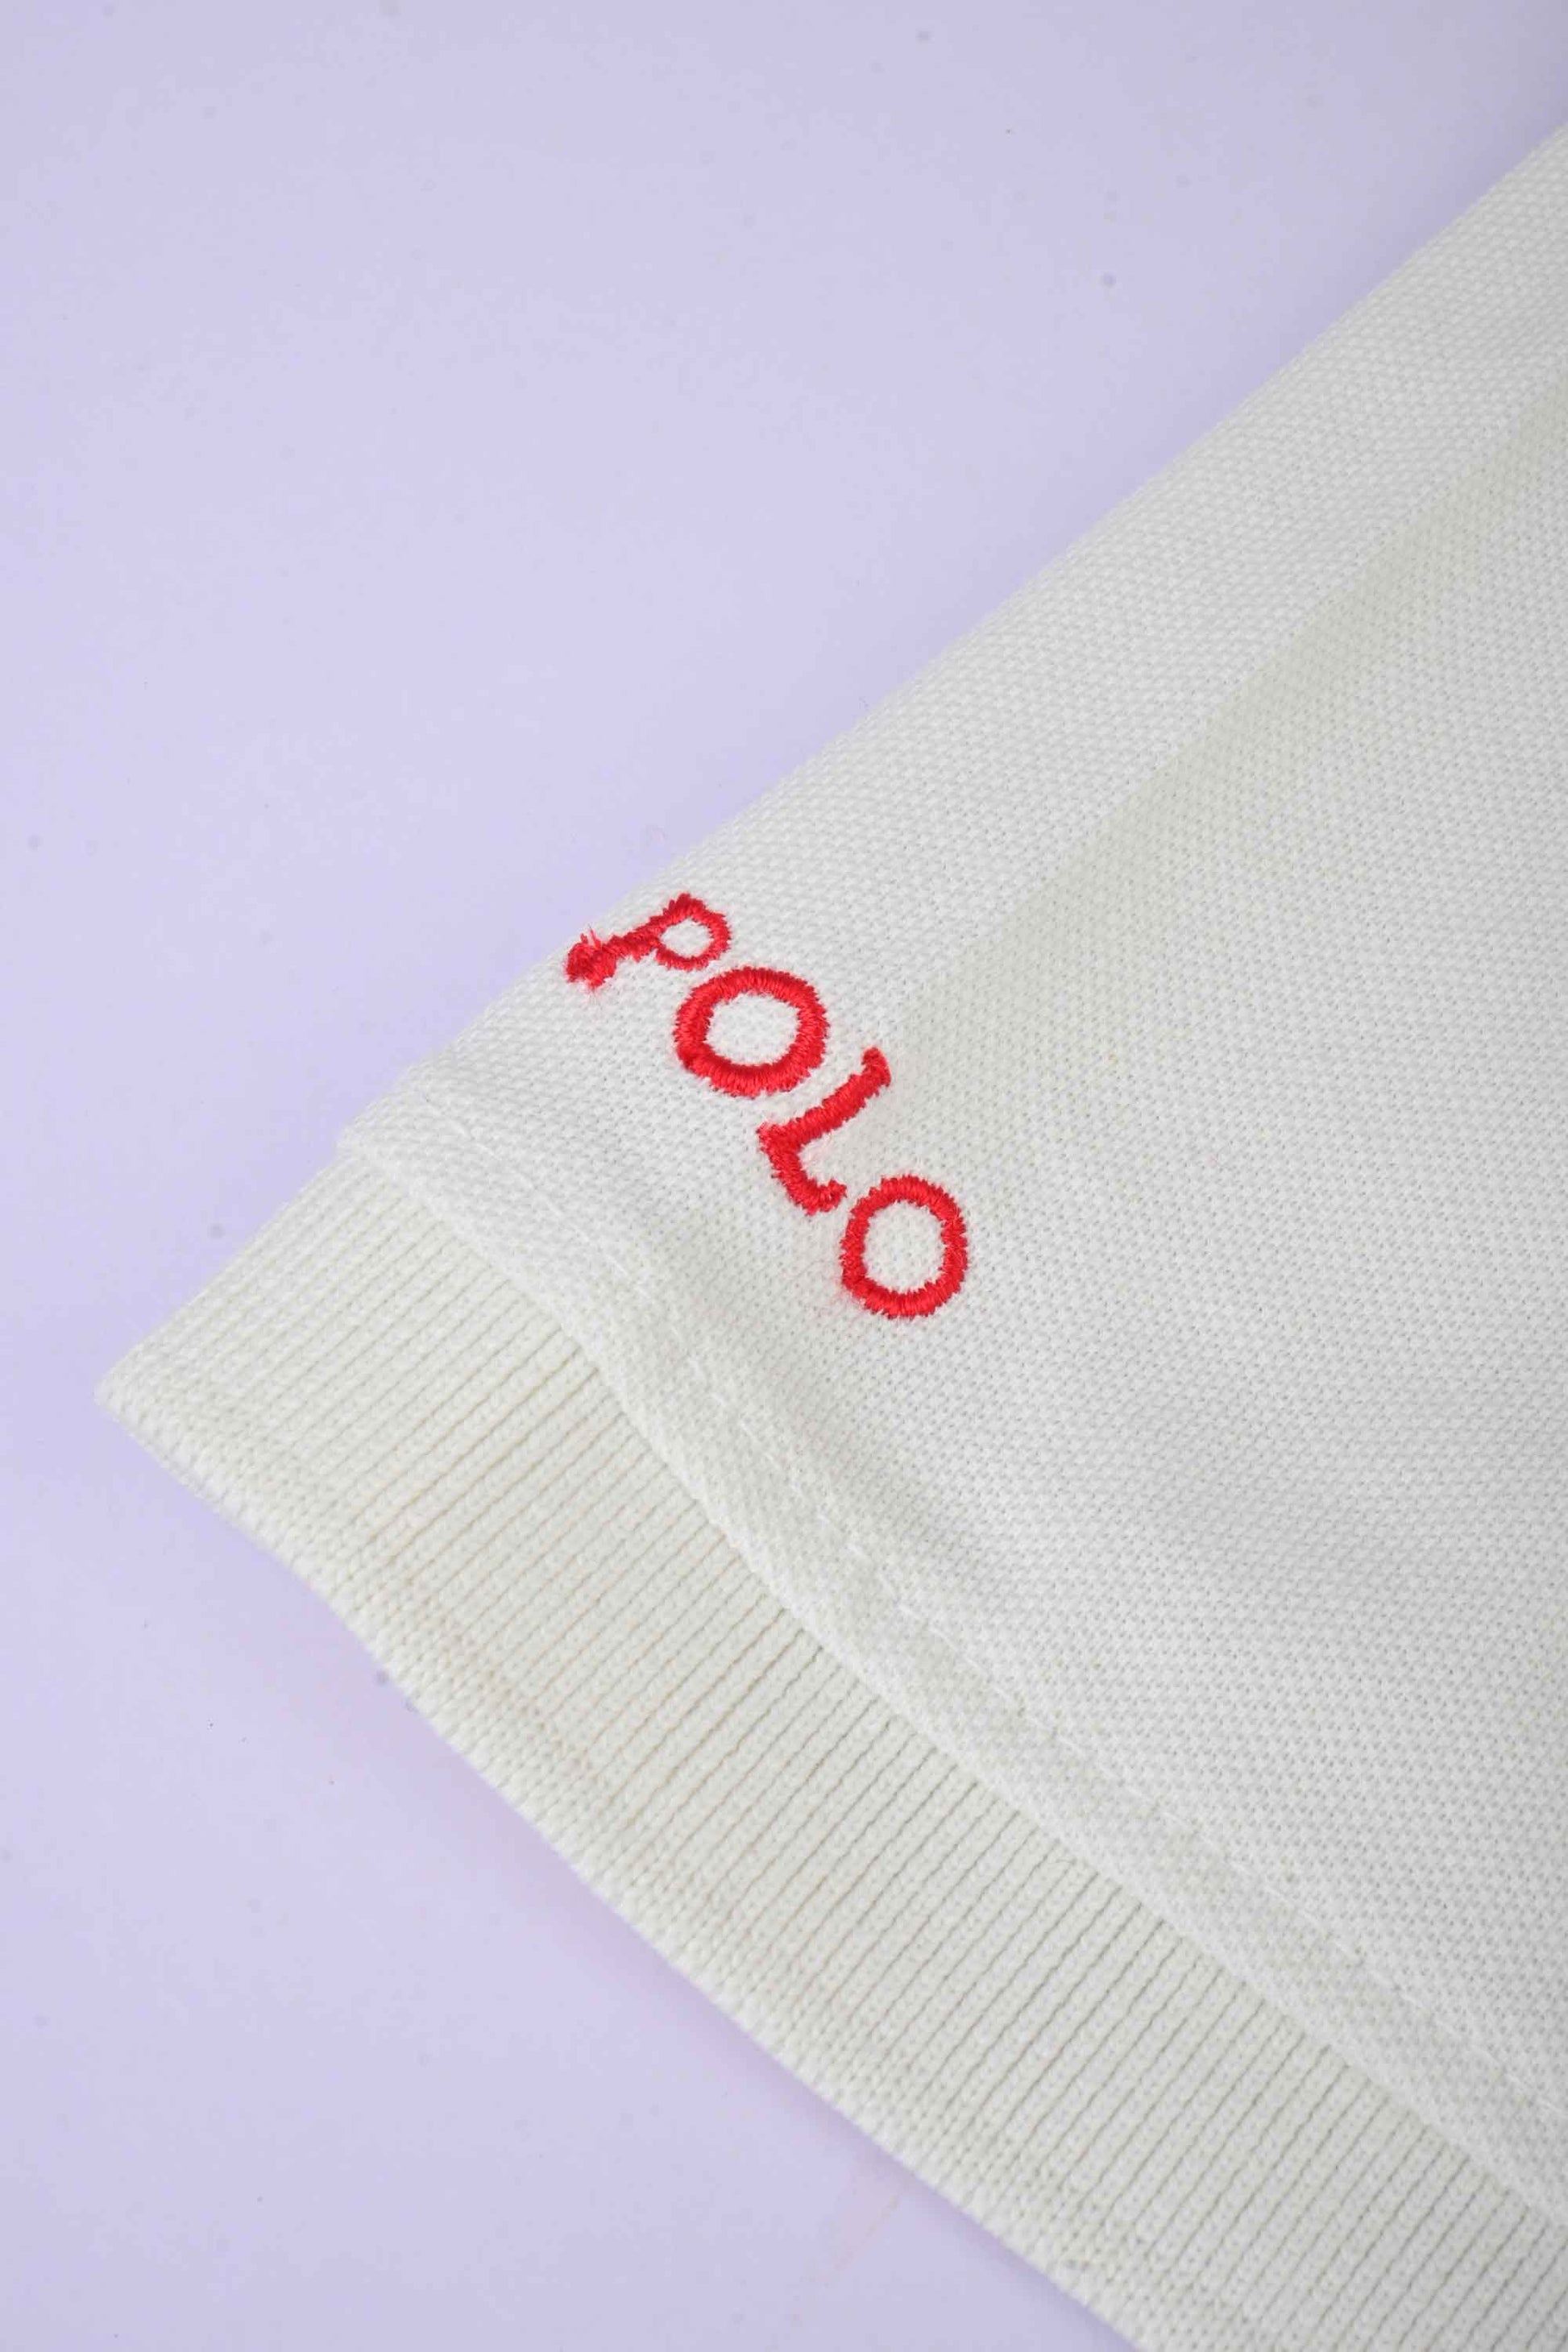 Polo Republica Men's Polo Rider & Crest Embroidered Short Sleeve Polo Shirt Men's Polo Shirt Polo Republica 